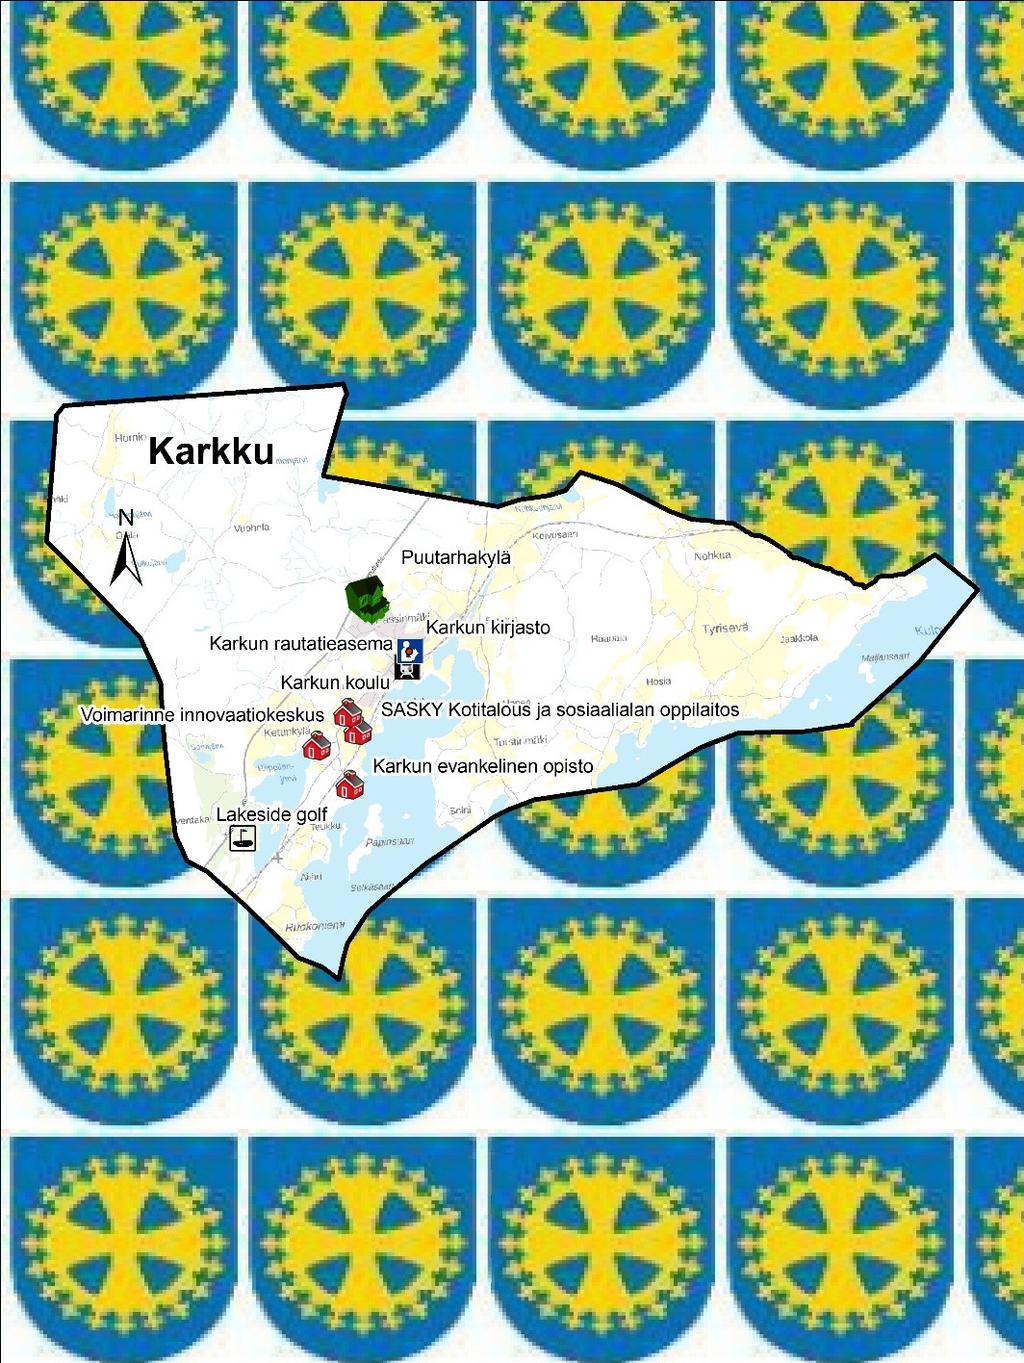 5.2.1 Kehittämisvyöhykkeet Karkku Karkun tilastoalueen karttakuvaan merkitty alueen palveluita sekä ympärivuotiseen asumiseen soveltuva siirtolapuutarhamainen puutarhakylä.